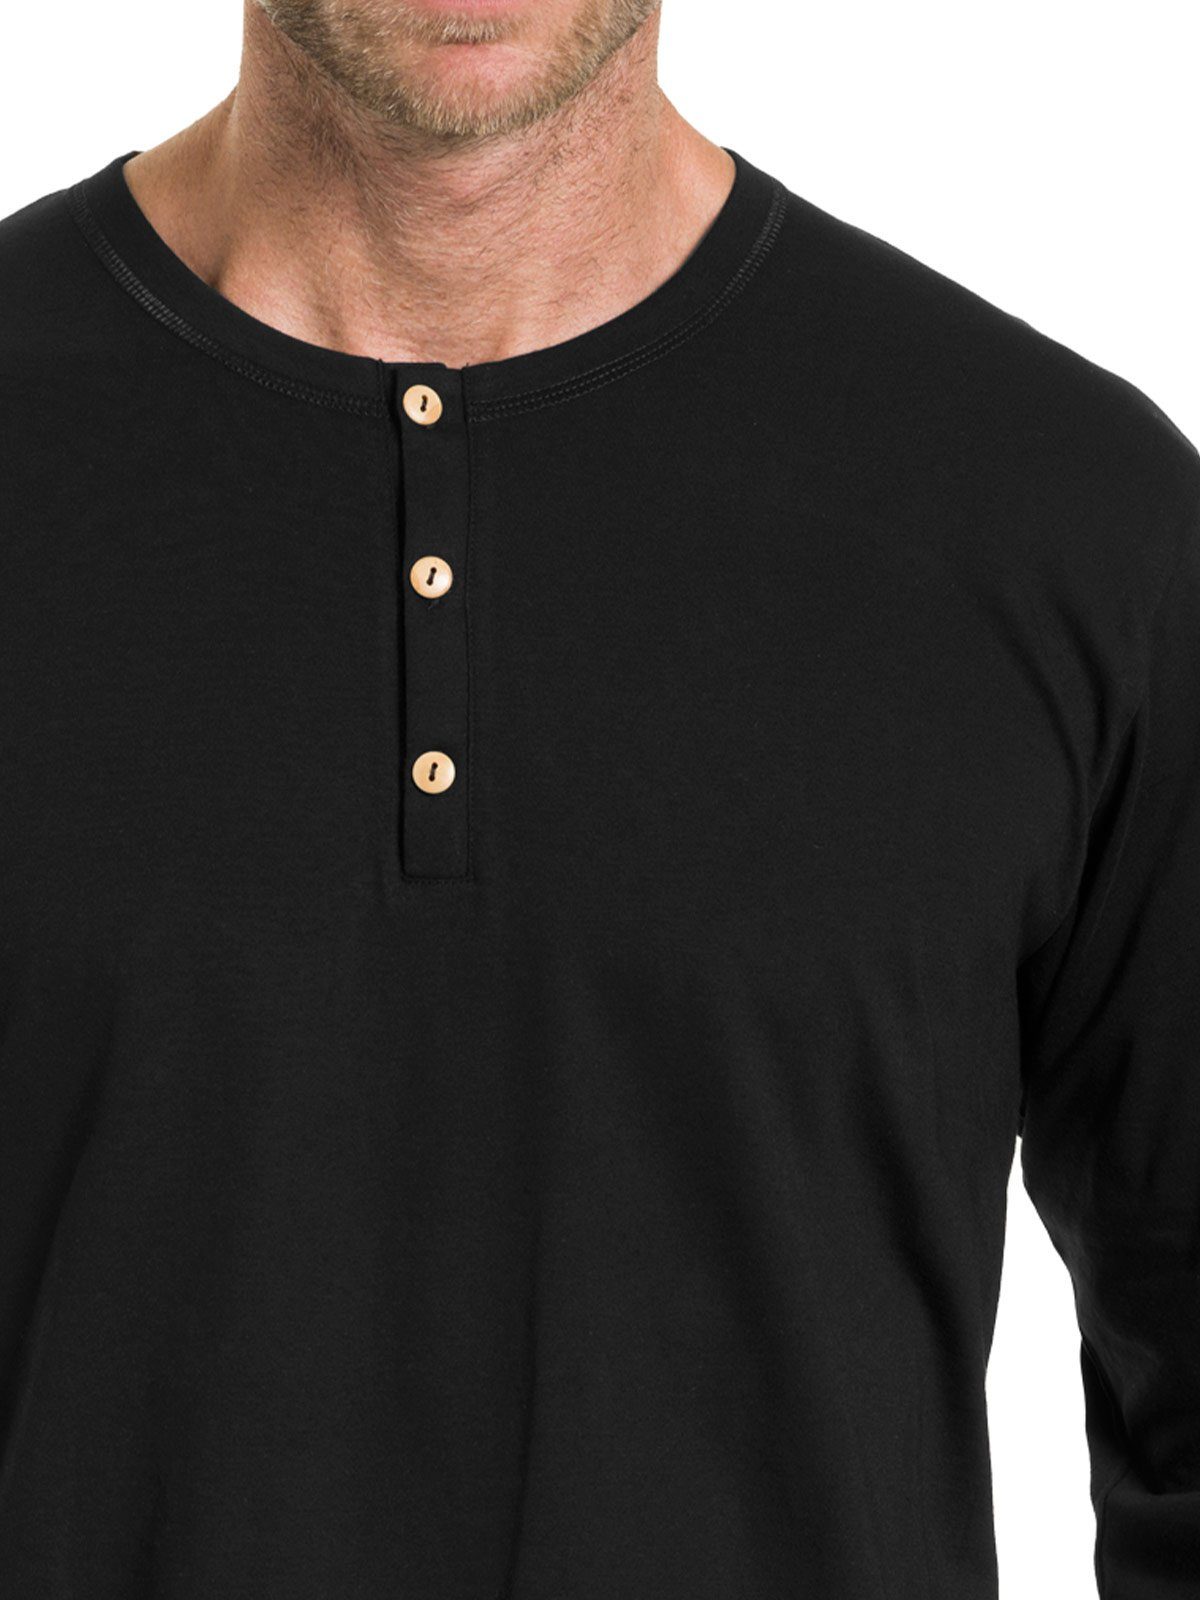 (Stück, Bio Unterhemd KUMPF schwarz Herren Markenqualität Cotton langarm hohe Shirt 1-St)